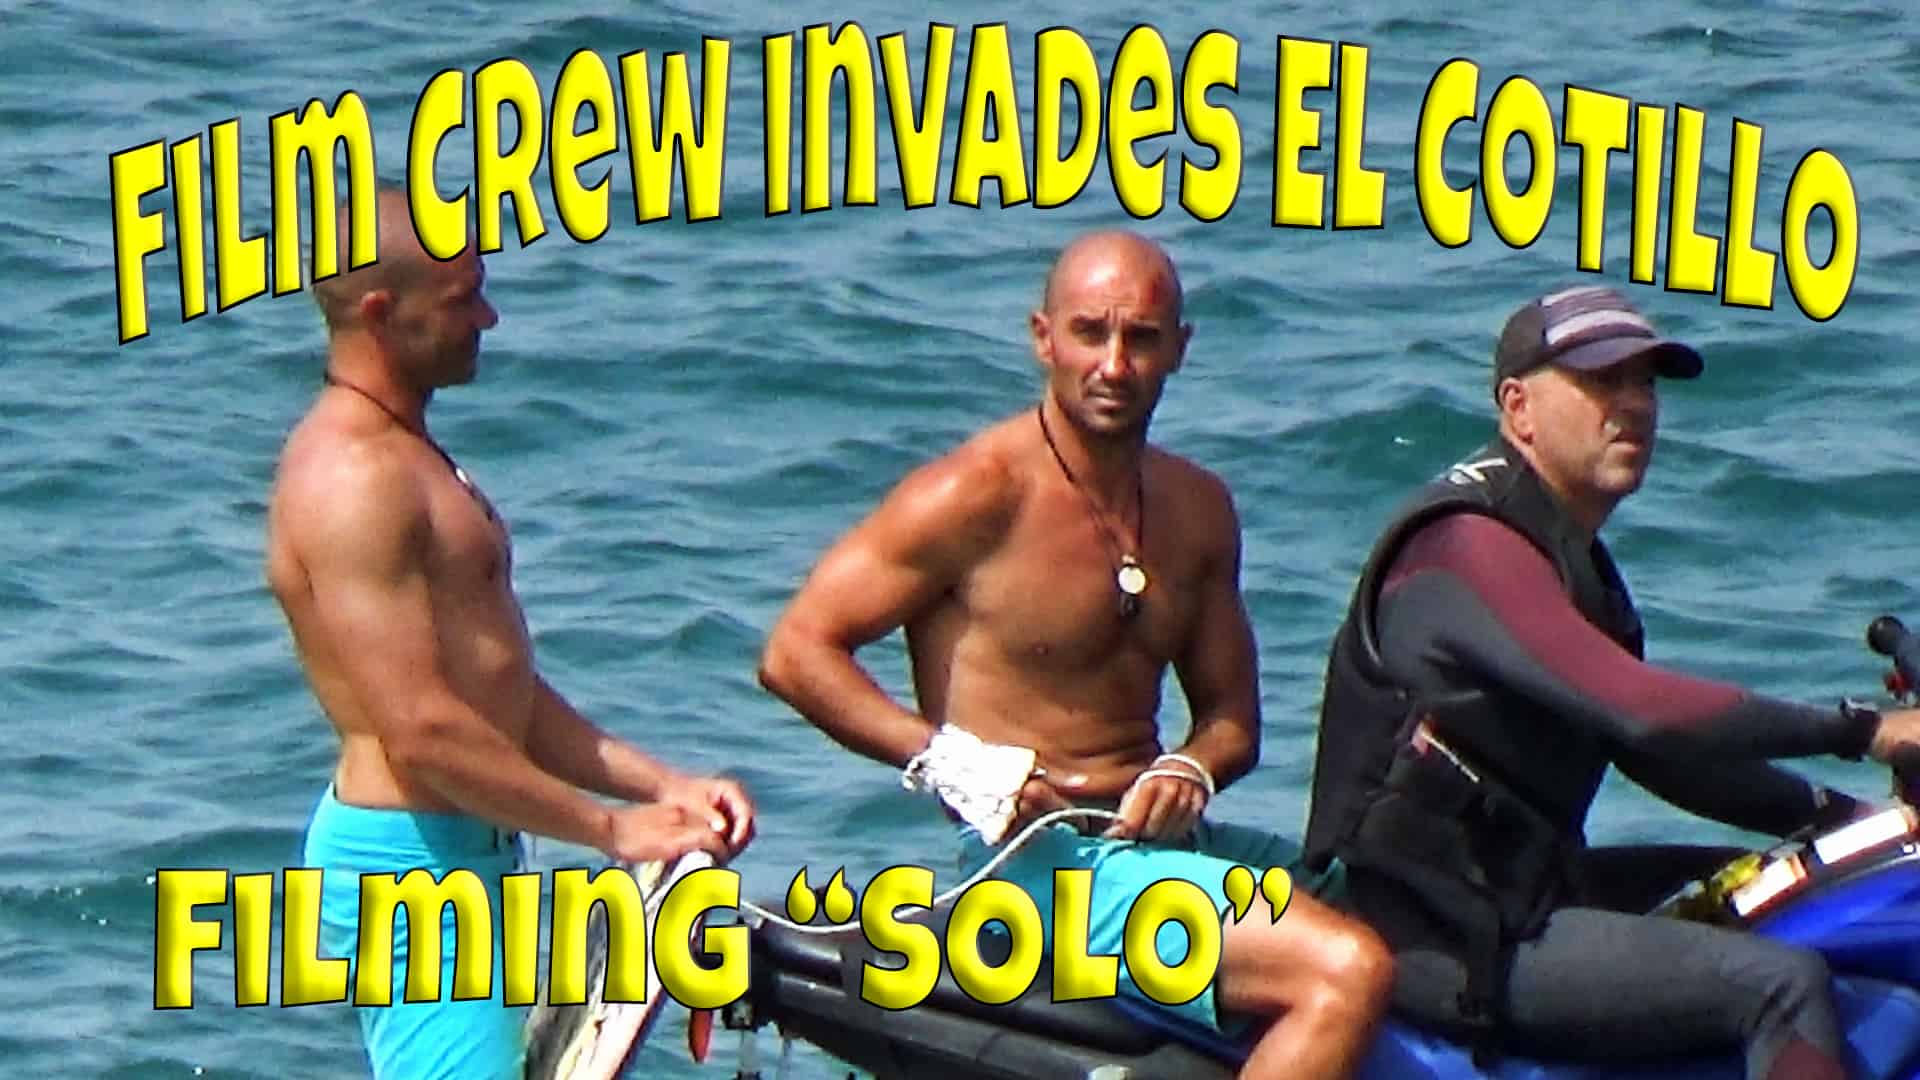 Film crew invaded El Cotillo to film "Solo" | Solo (2017 film) 1